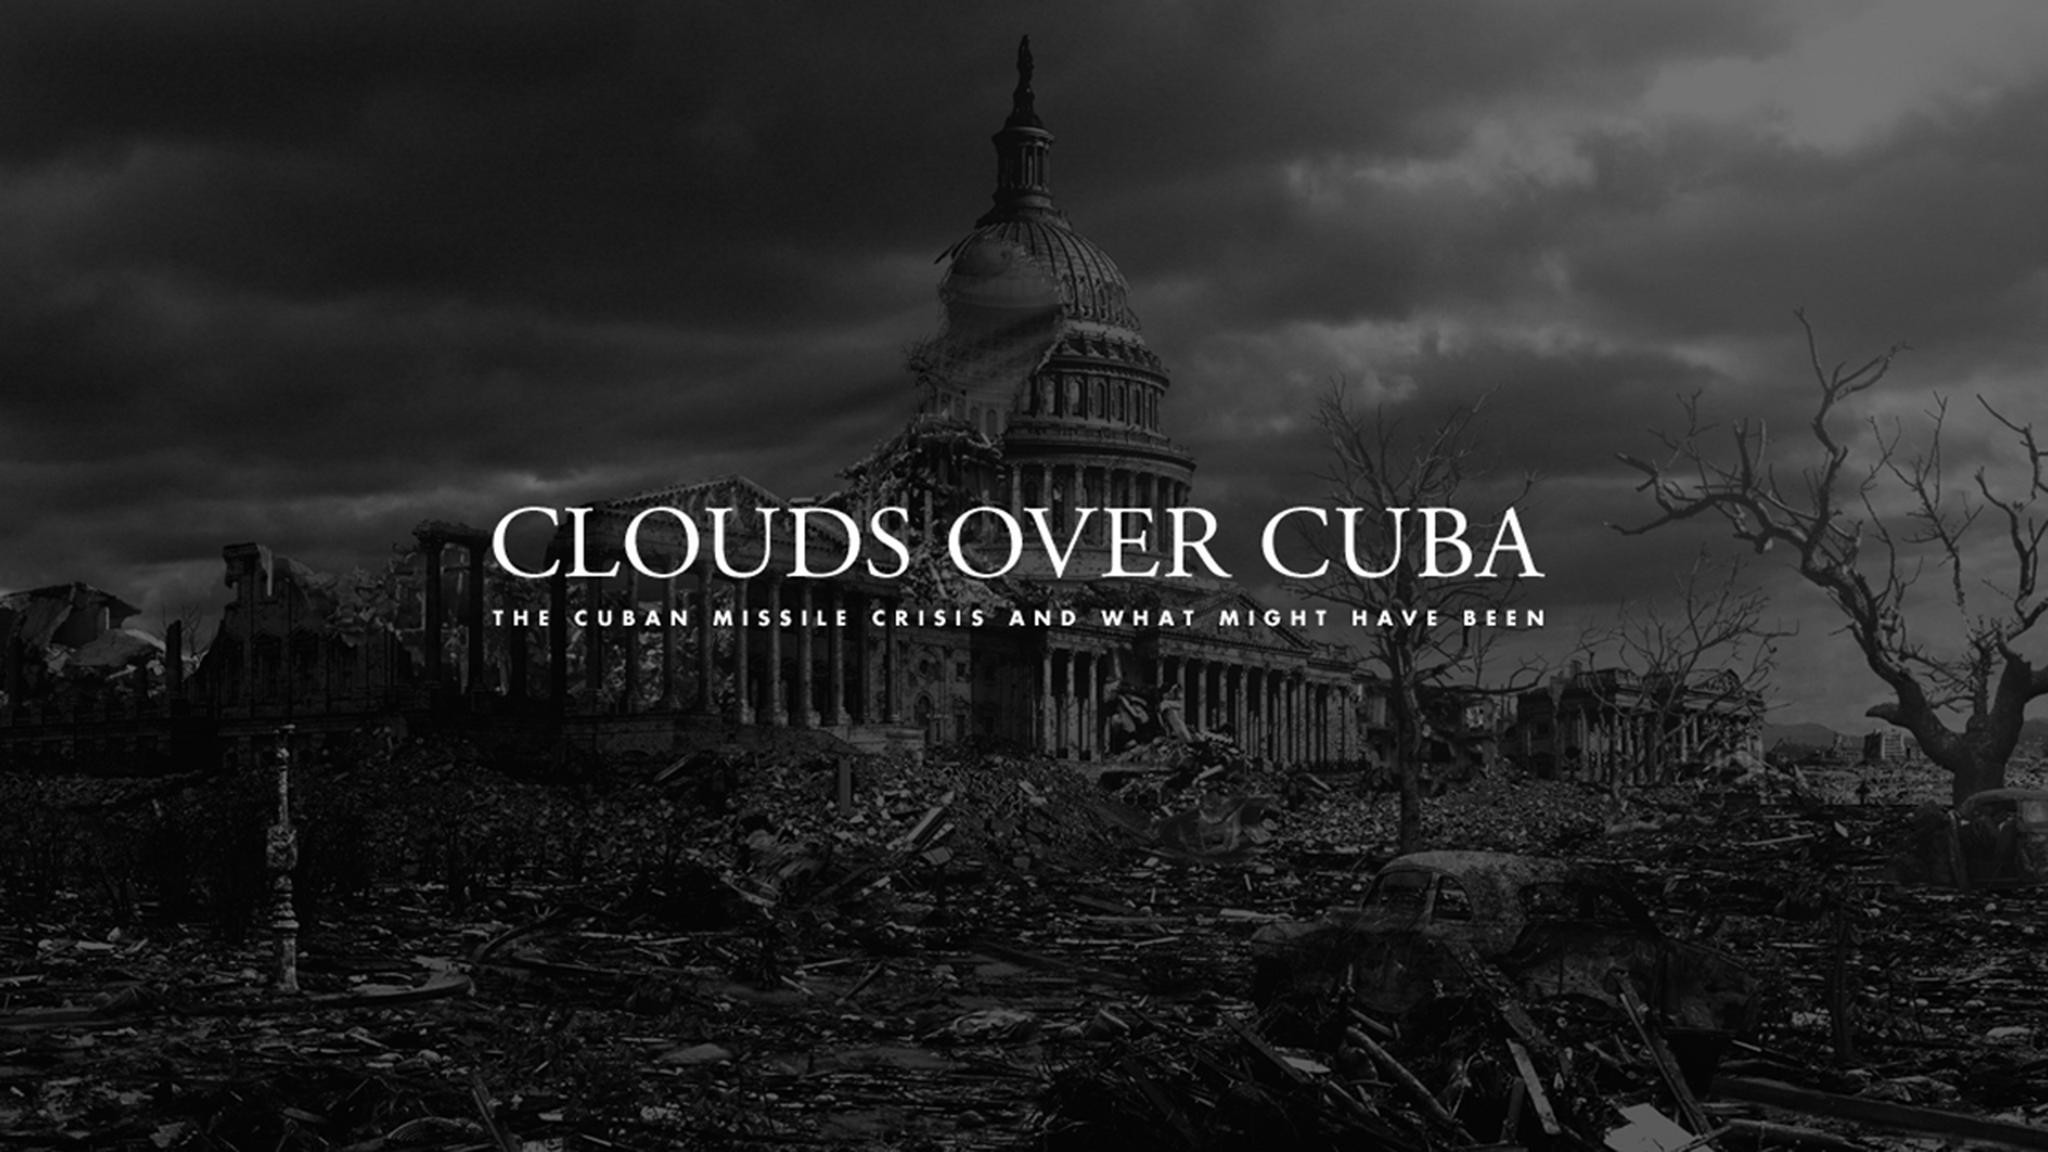 CLOUDS OVER CUBA